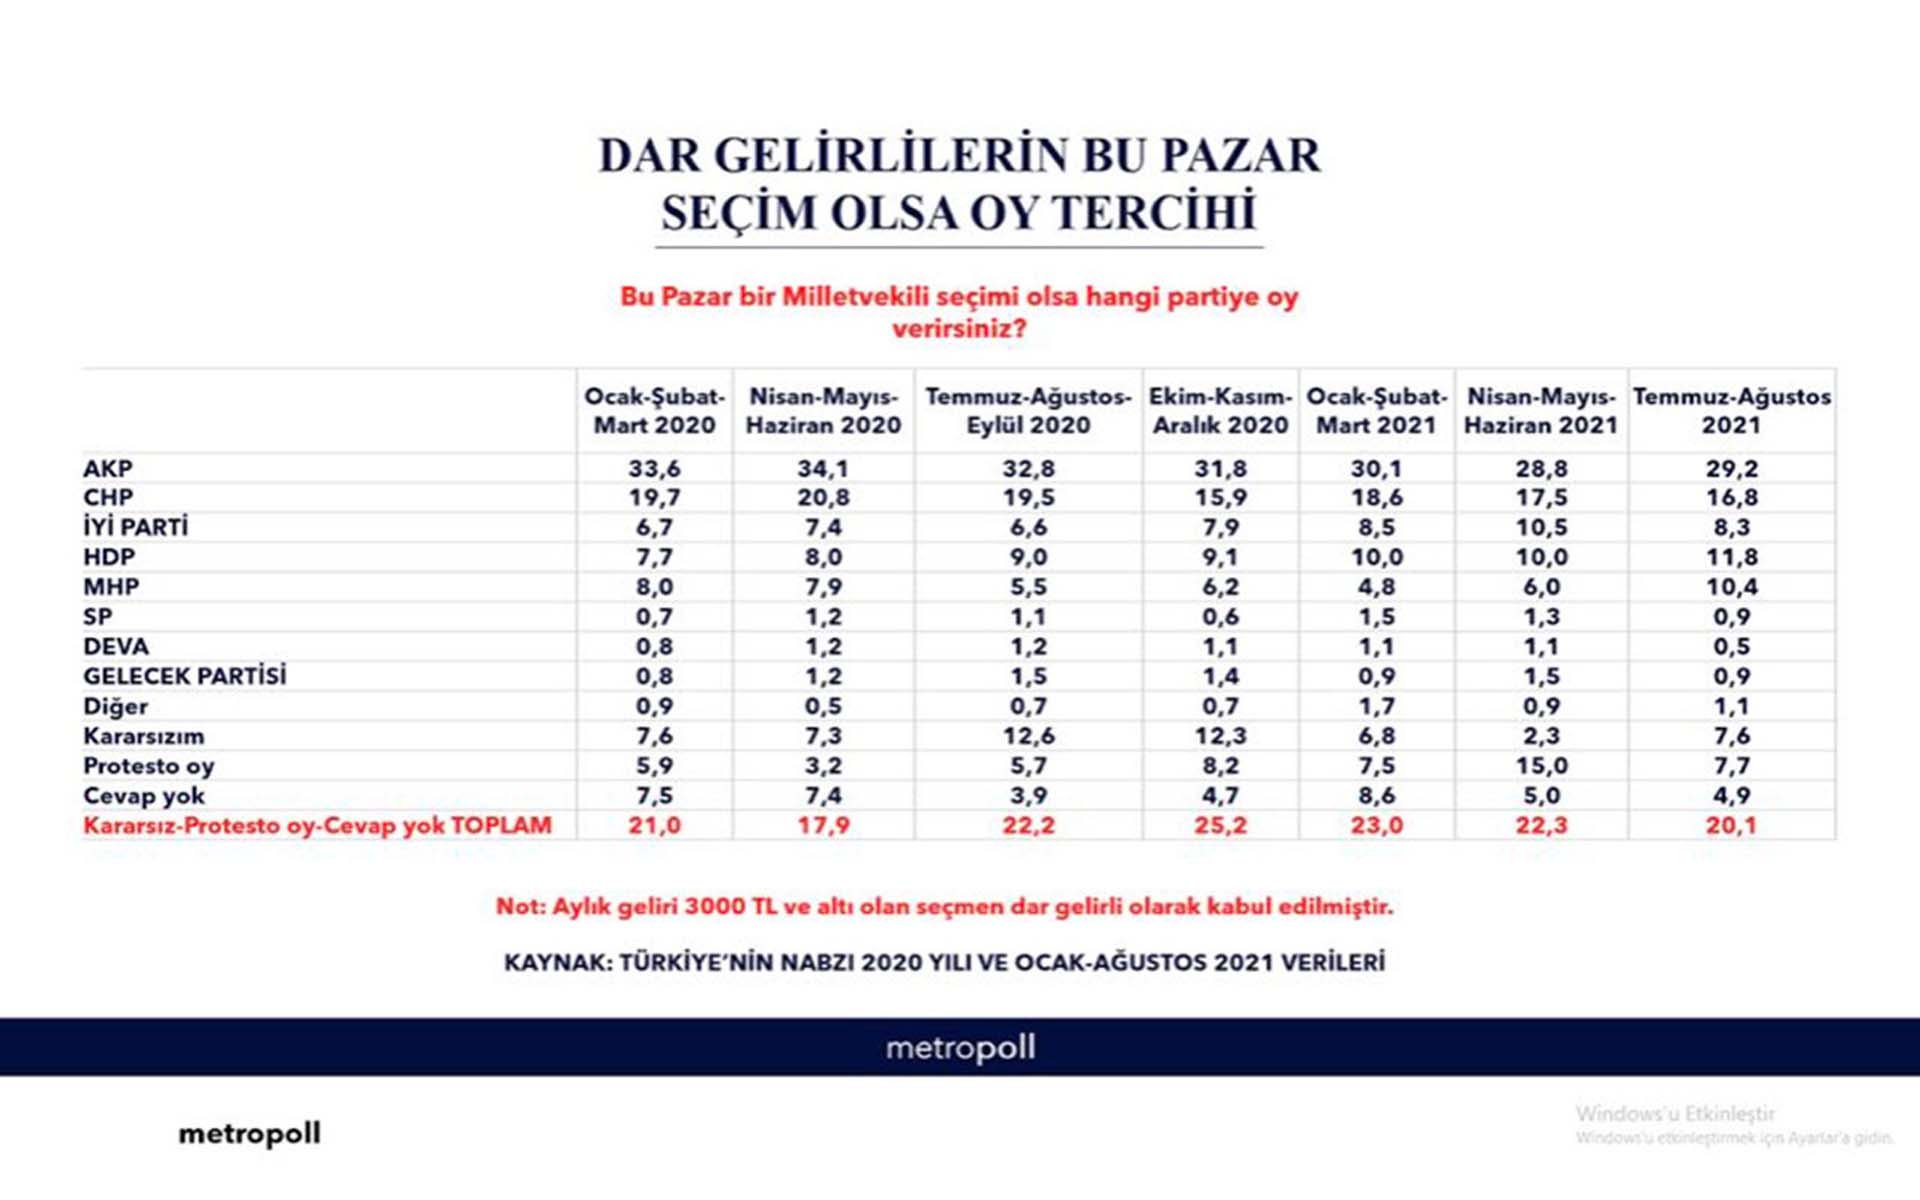 Anket sonuçları gerçeği ortaya koydu! Dar gelirli vatandaşlar AK Parti'yi seçti!